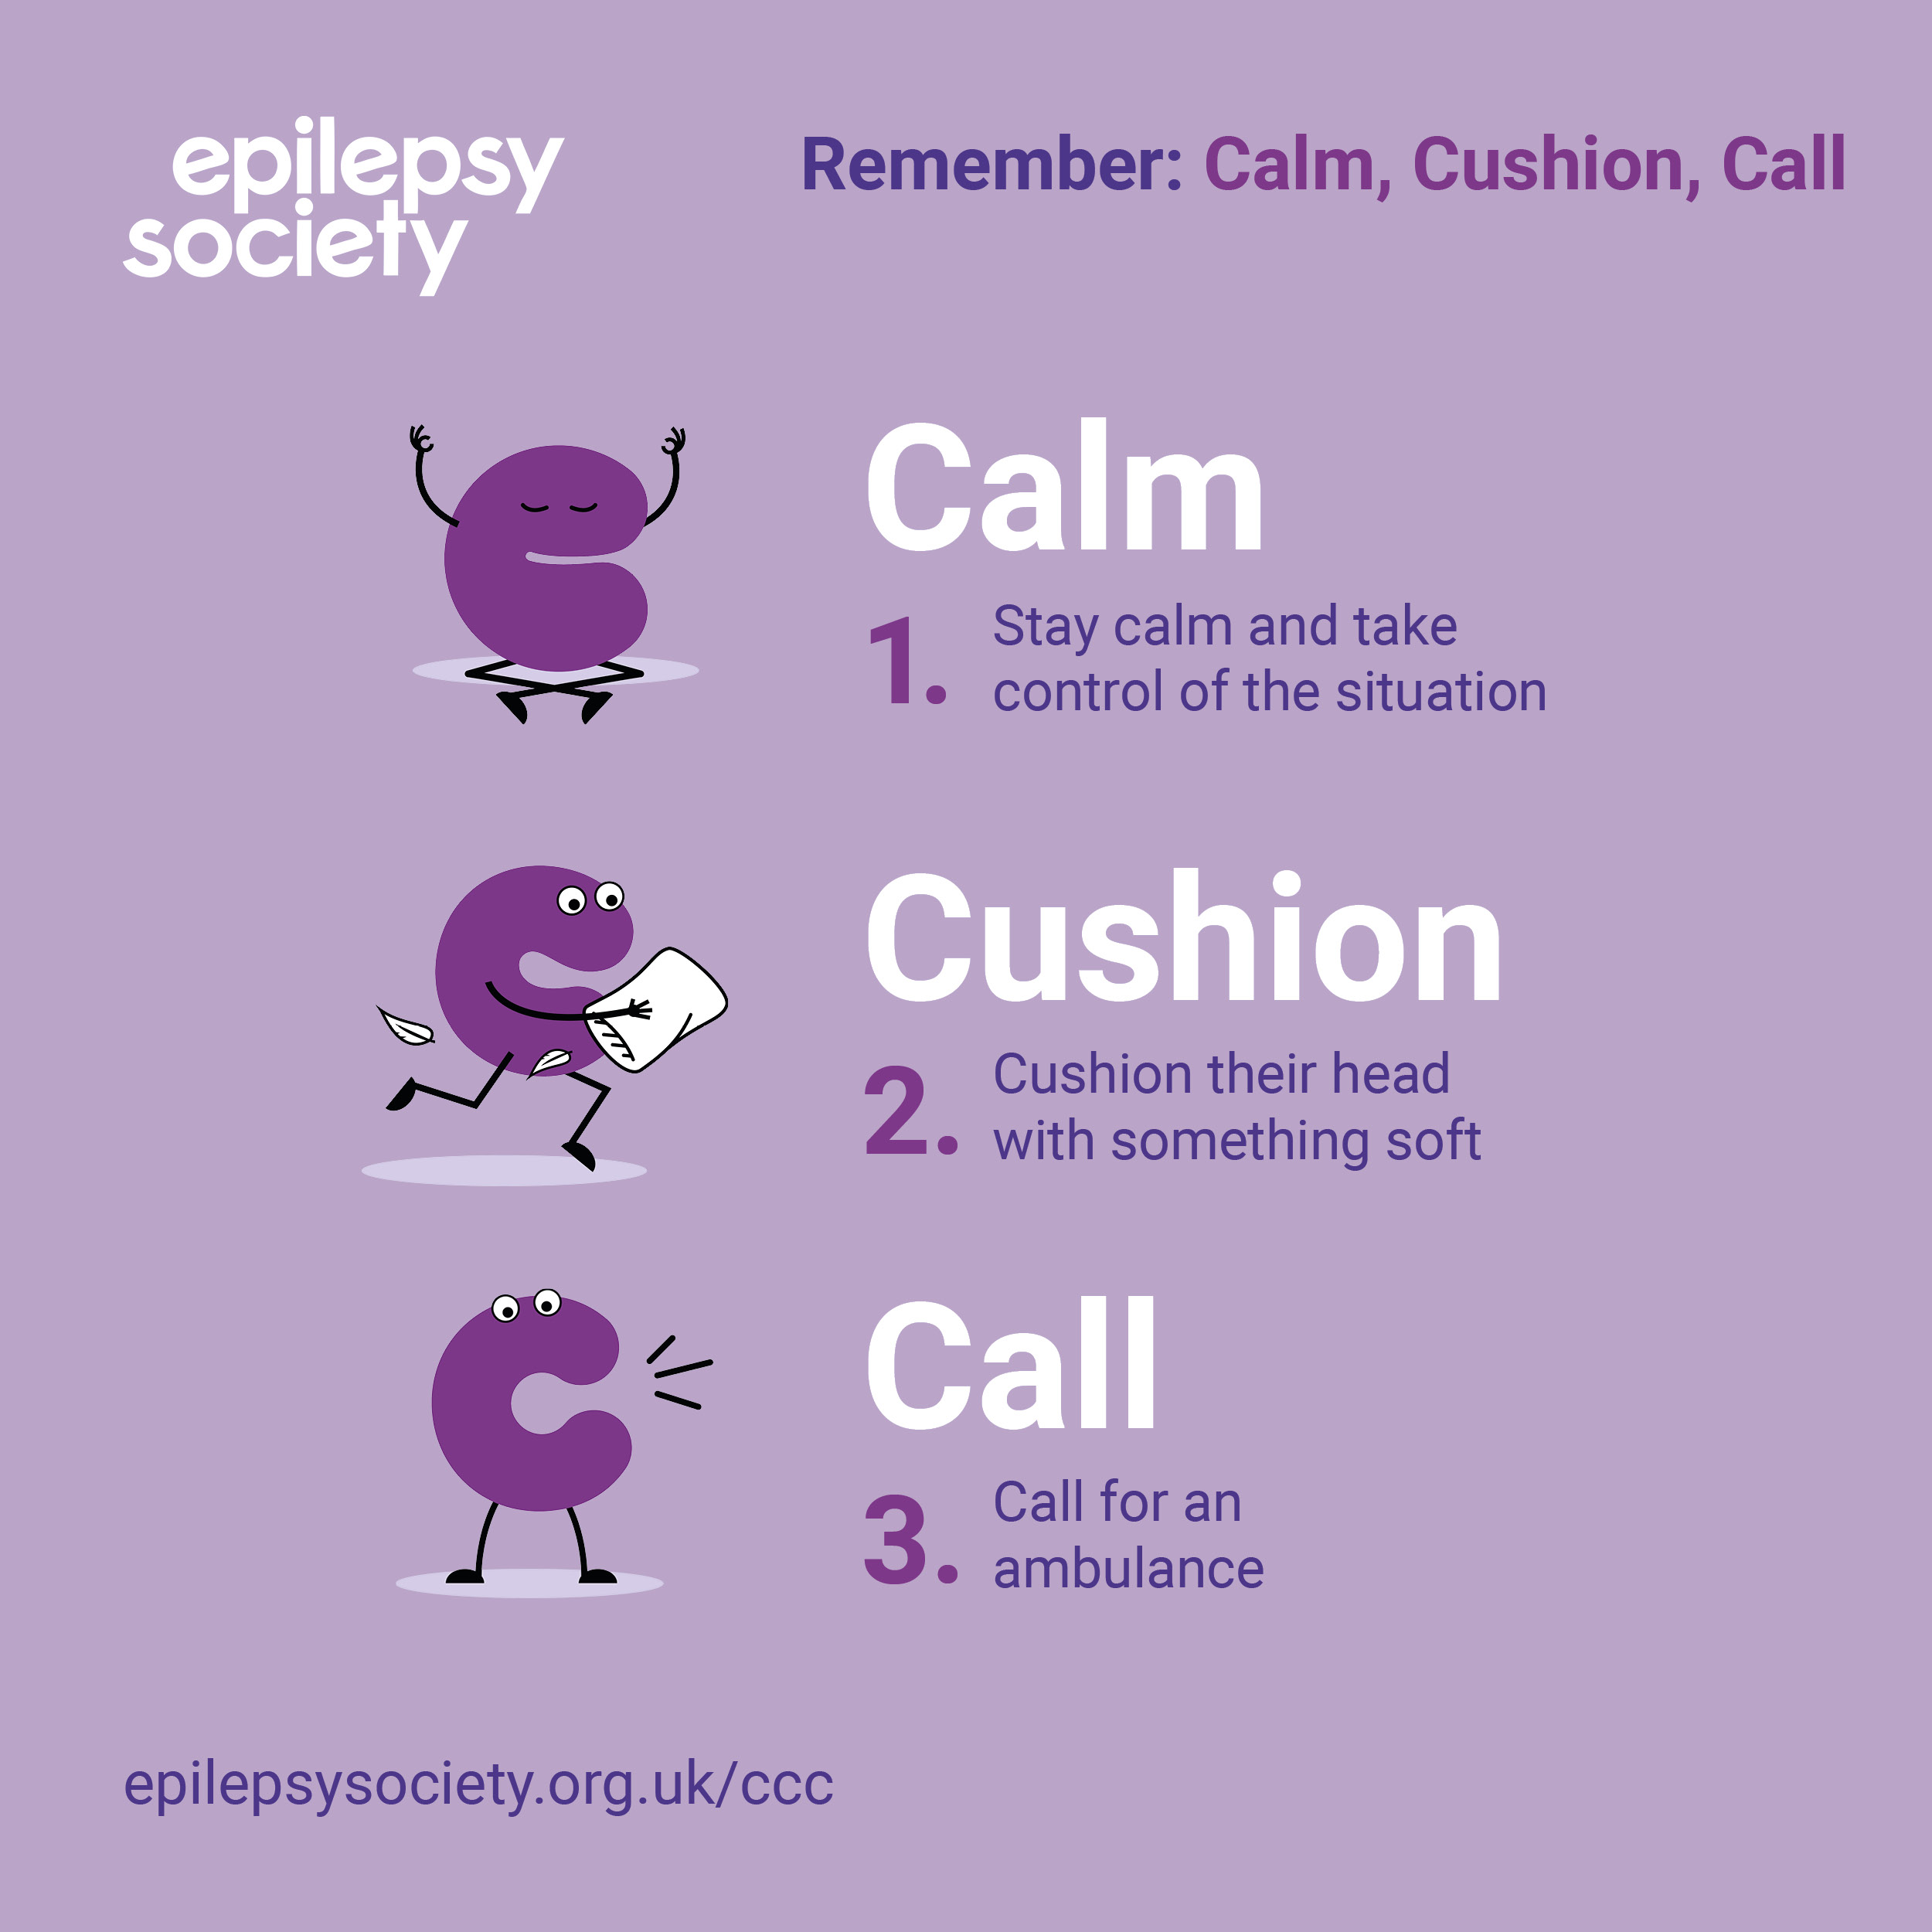 The calm, cushion, call poster